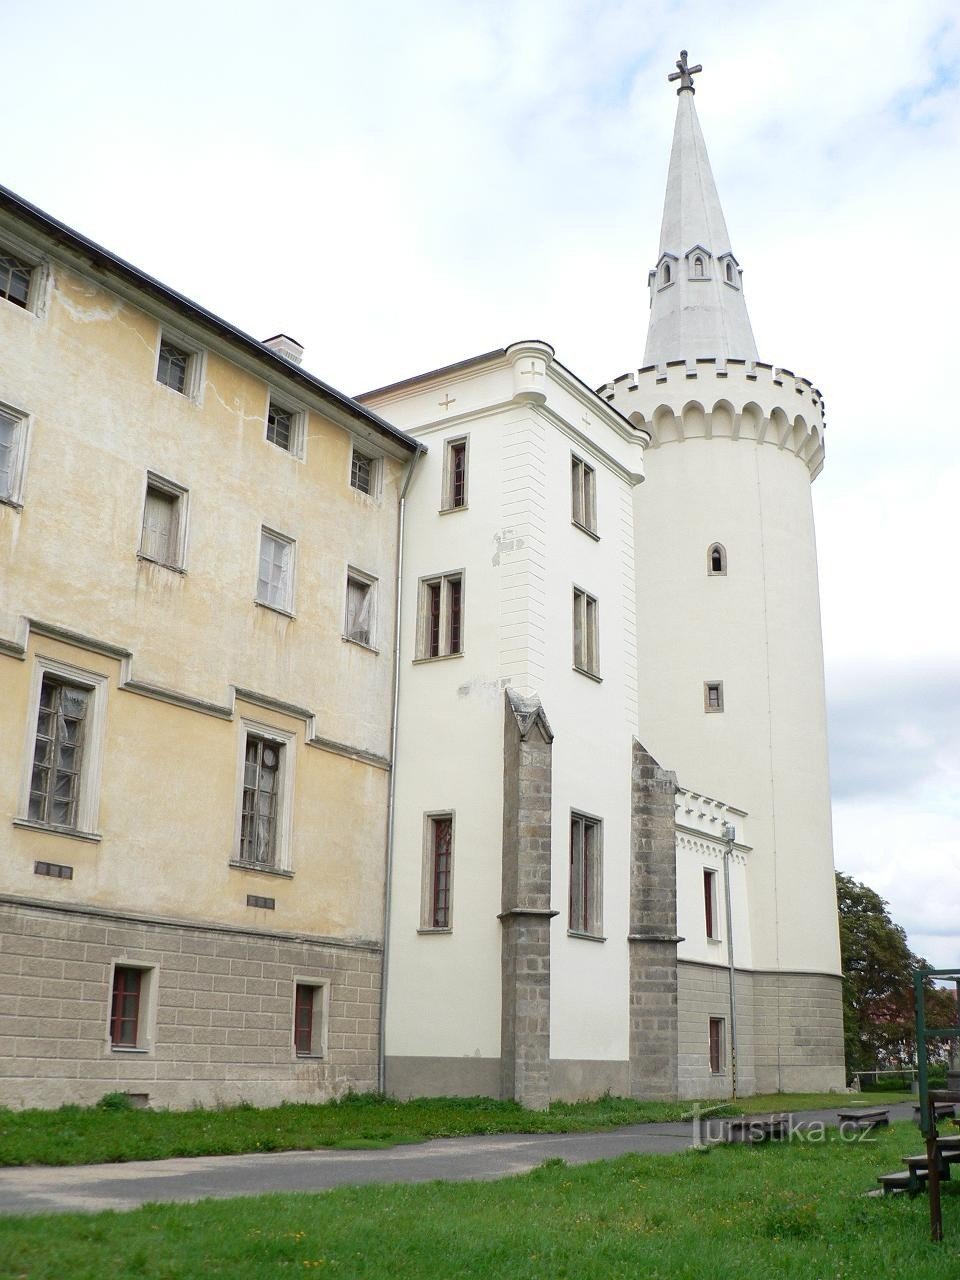 Κάστρο Bor, πύργος